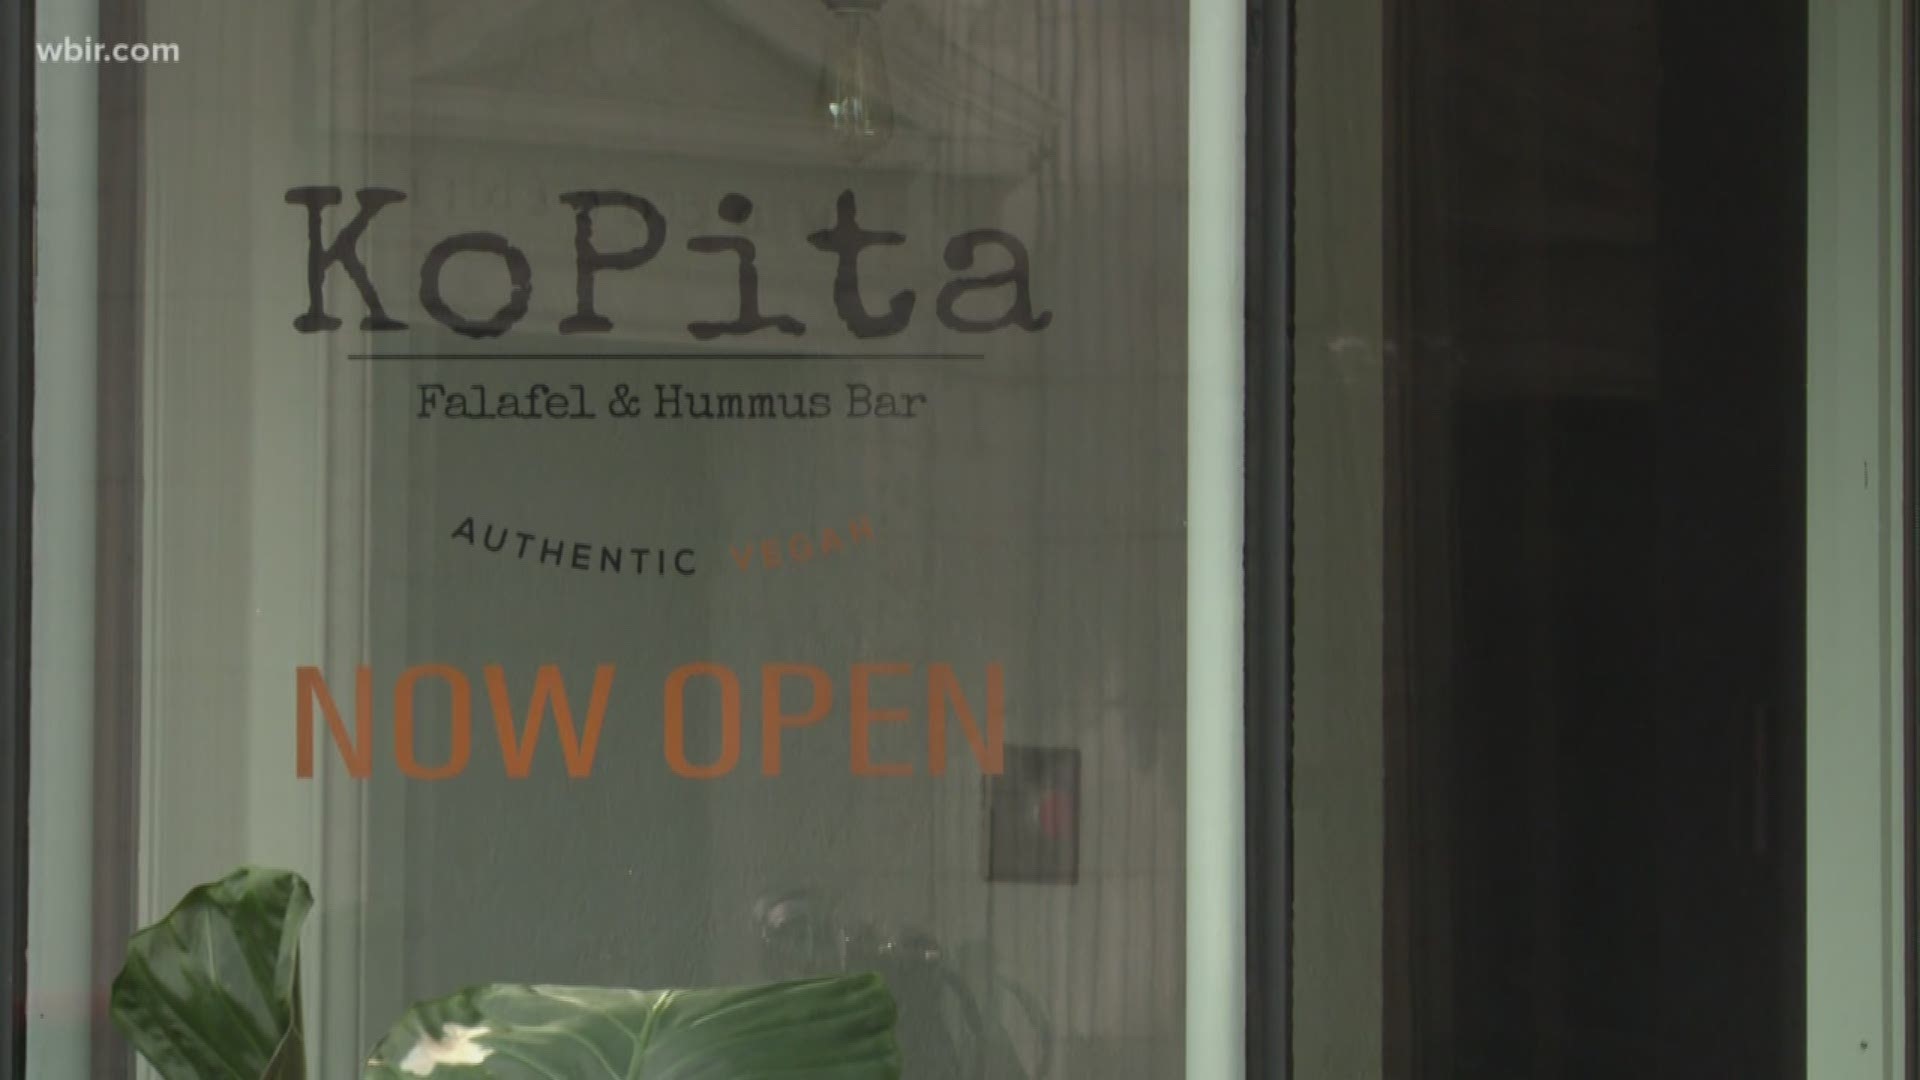 Kopita is a falafel and hummus bar.